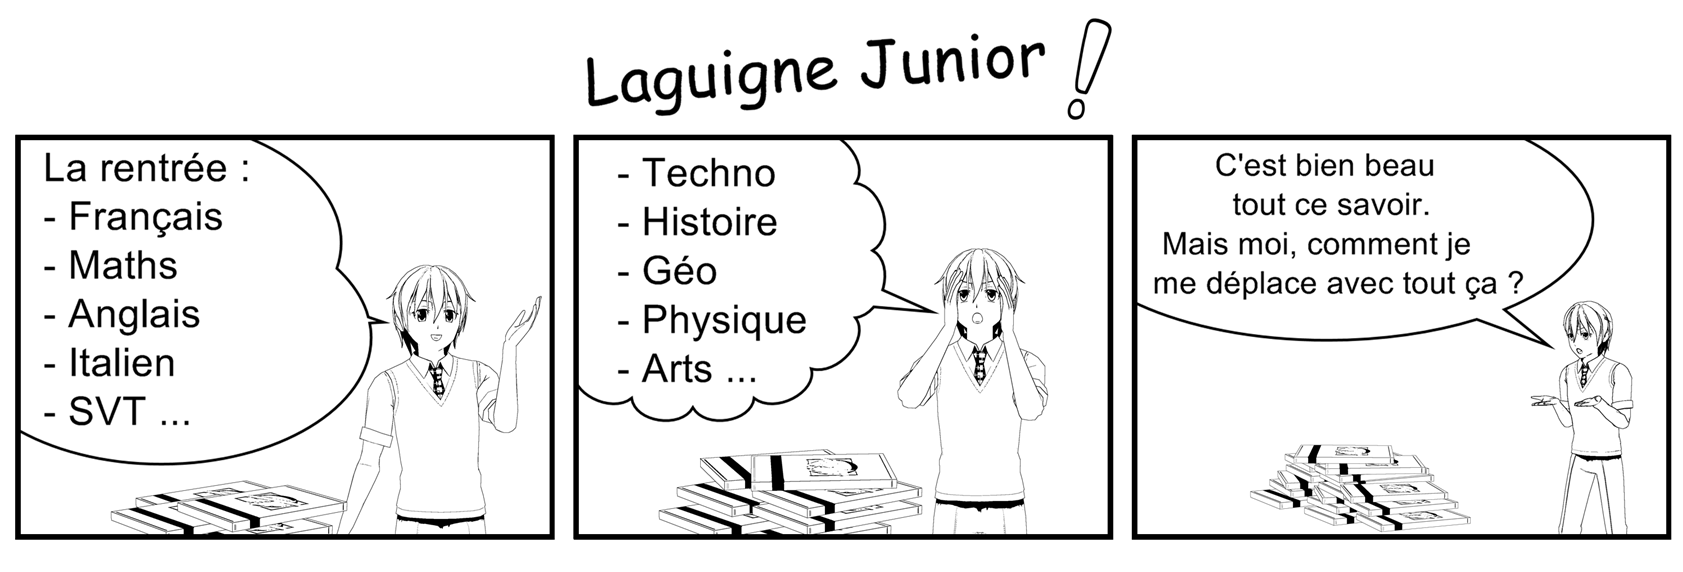 Laguigne Junior - Strip Laguig17